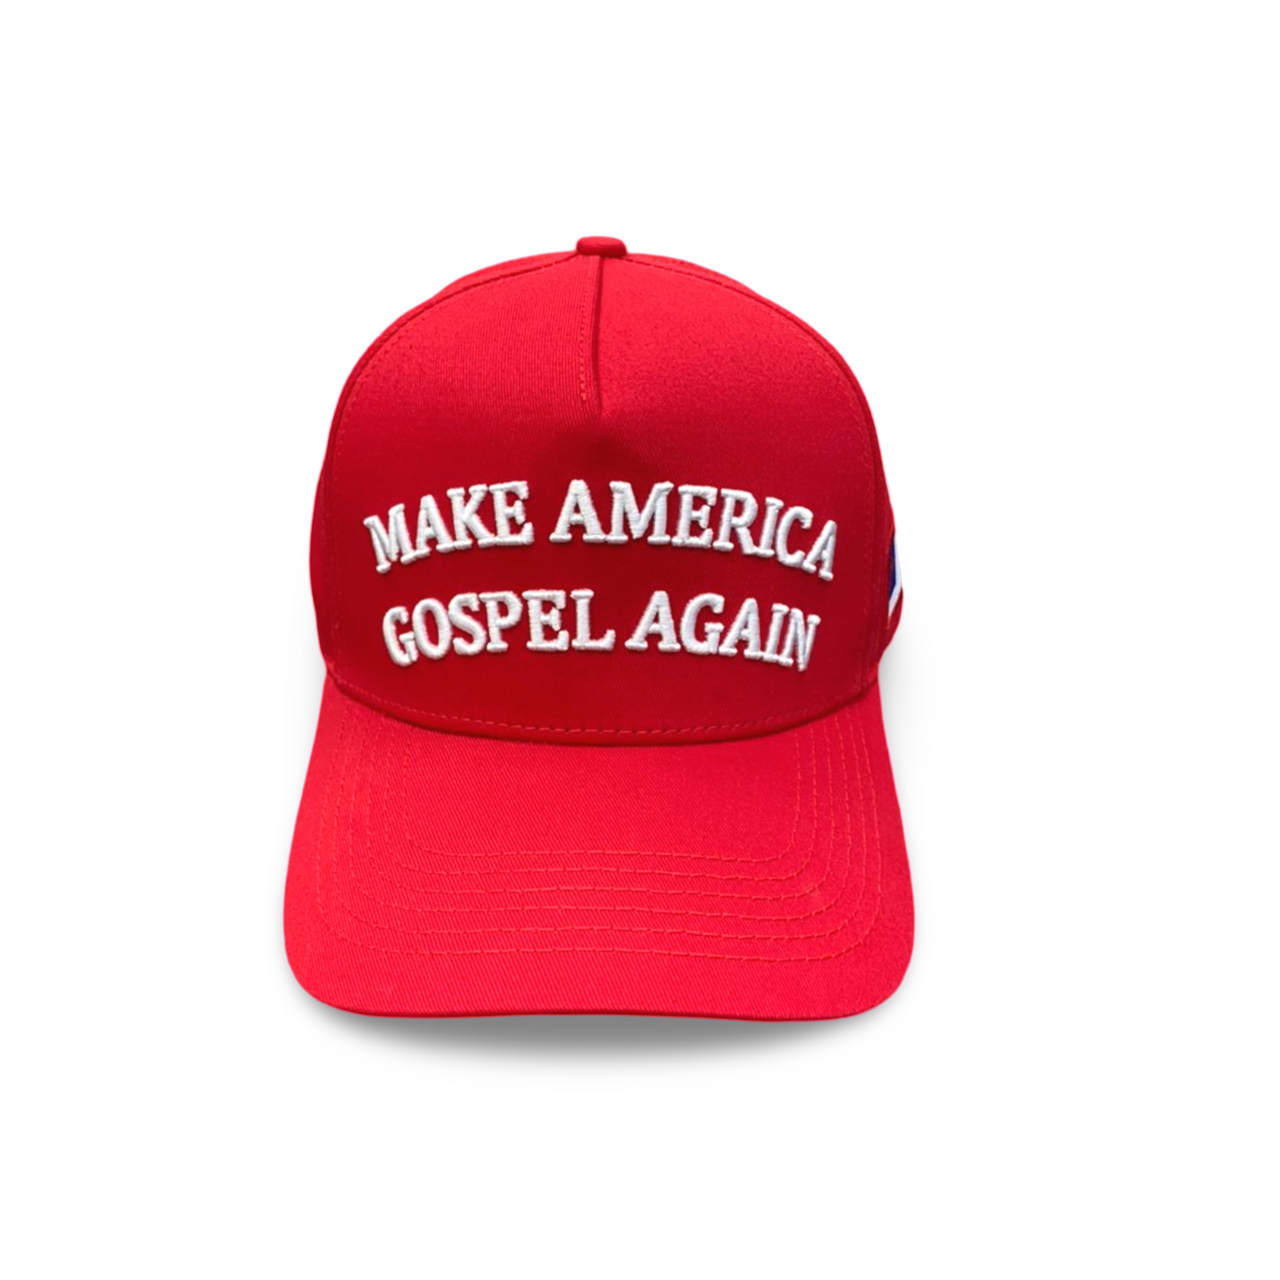 Make America Gospel Again Trucker